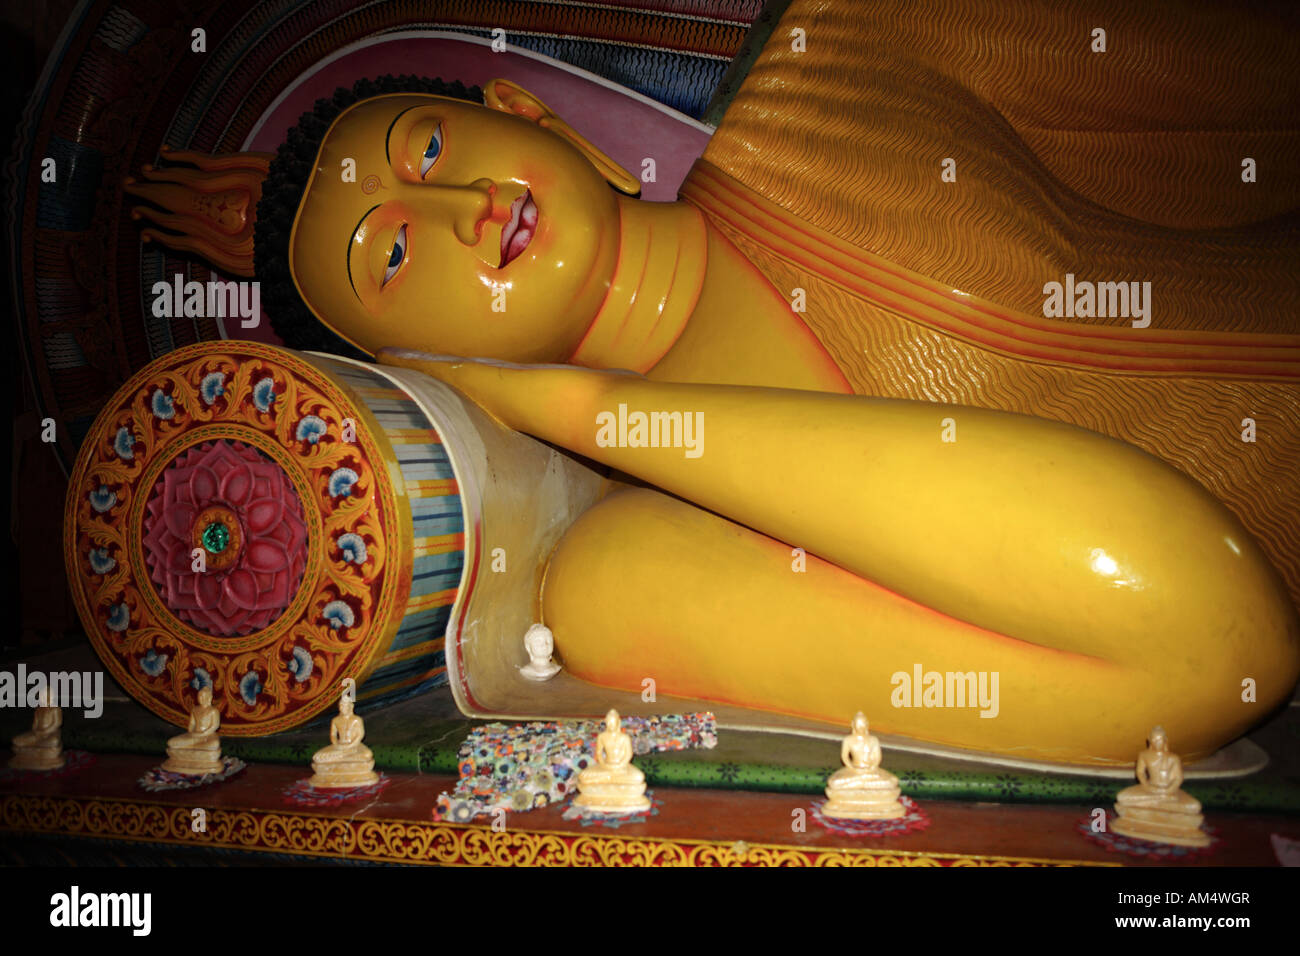 Sleeping Buddha in a temple in Sri Lanka Stock Photo